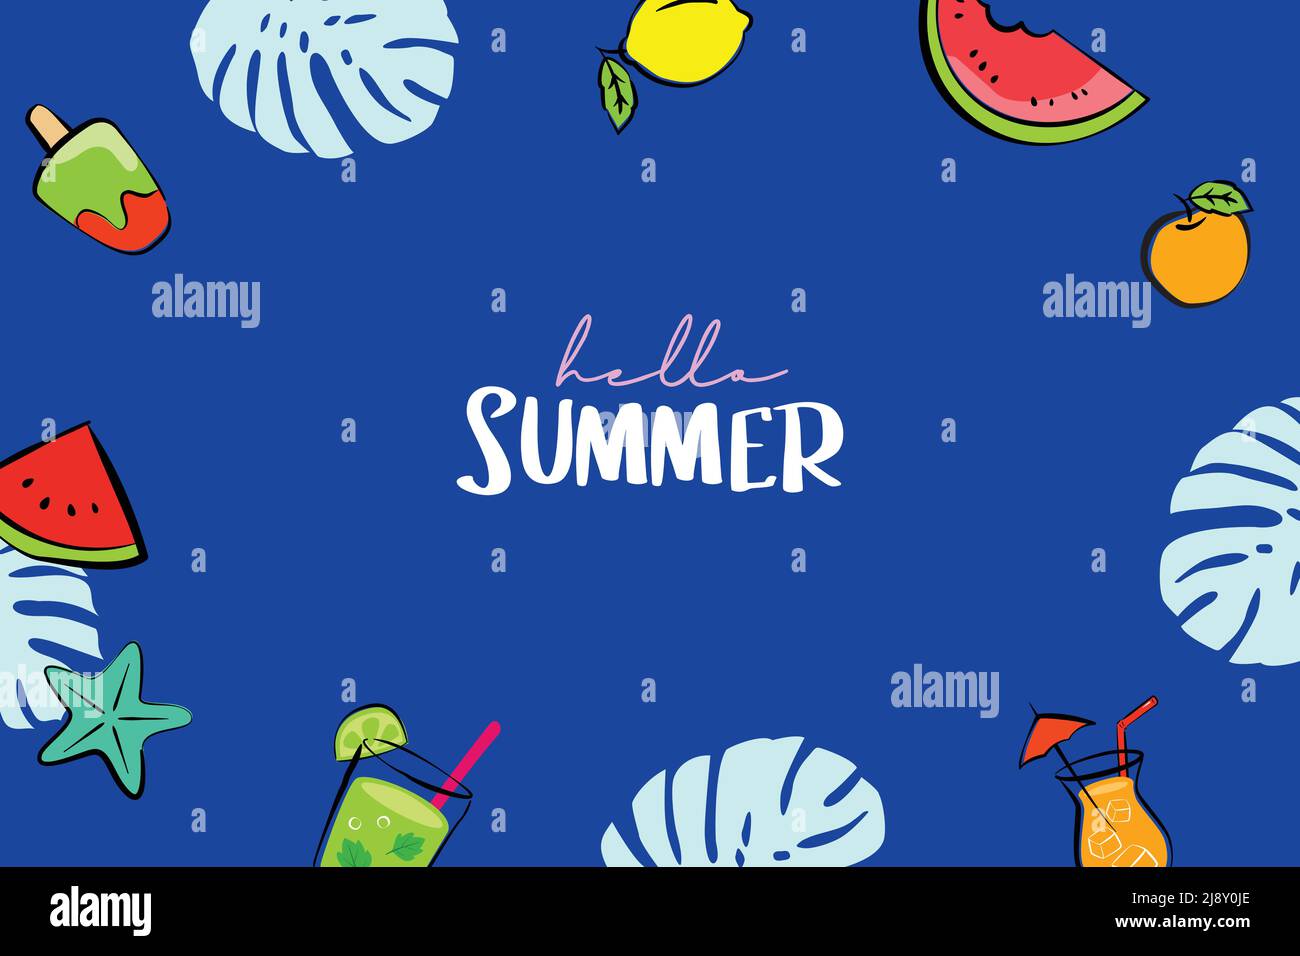 Hallo Sommer Banner Design handgezeichnete Stil. Sommer mit Kritzeleien und Objekten Elemente für Strand Party Hintergrund. Stock Vektor